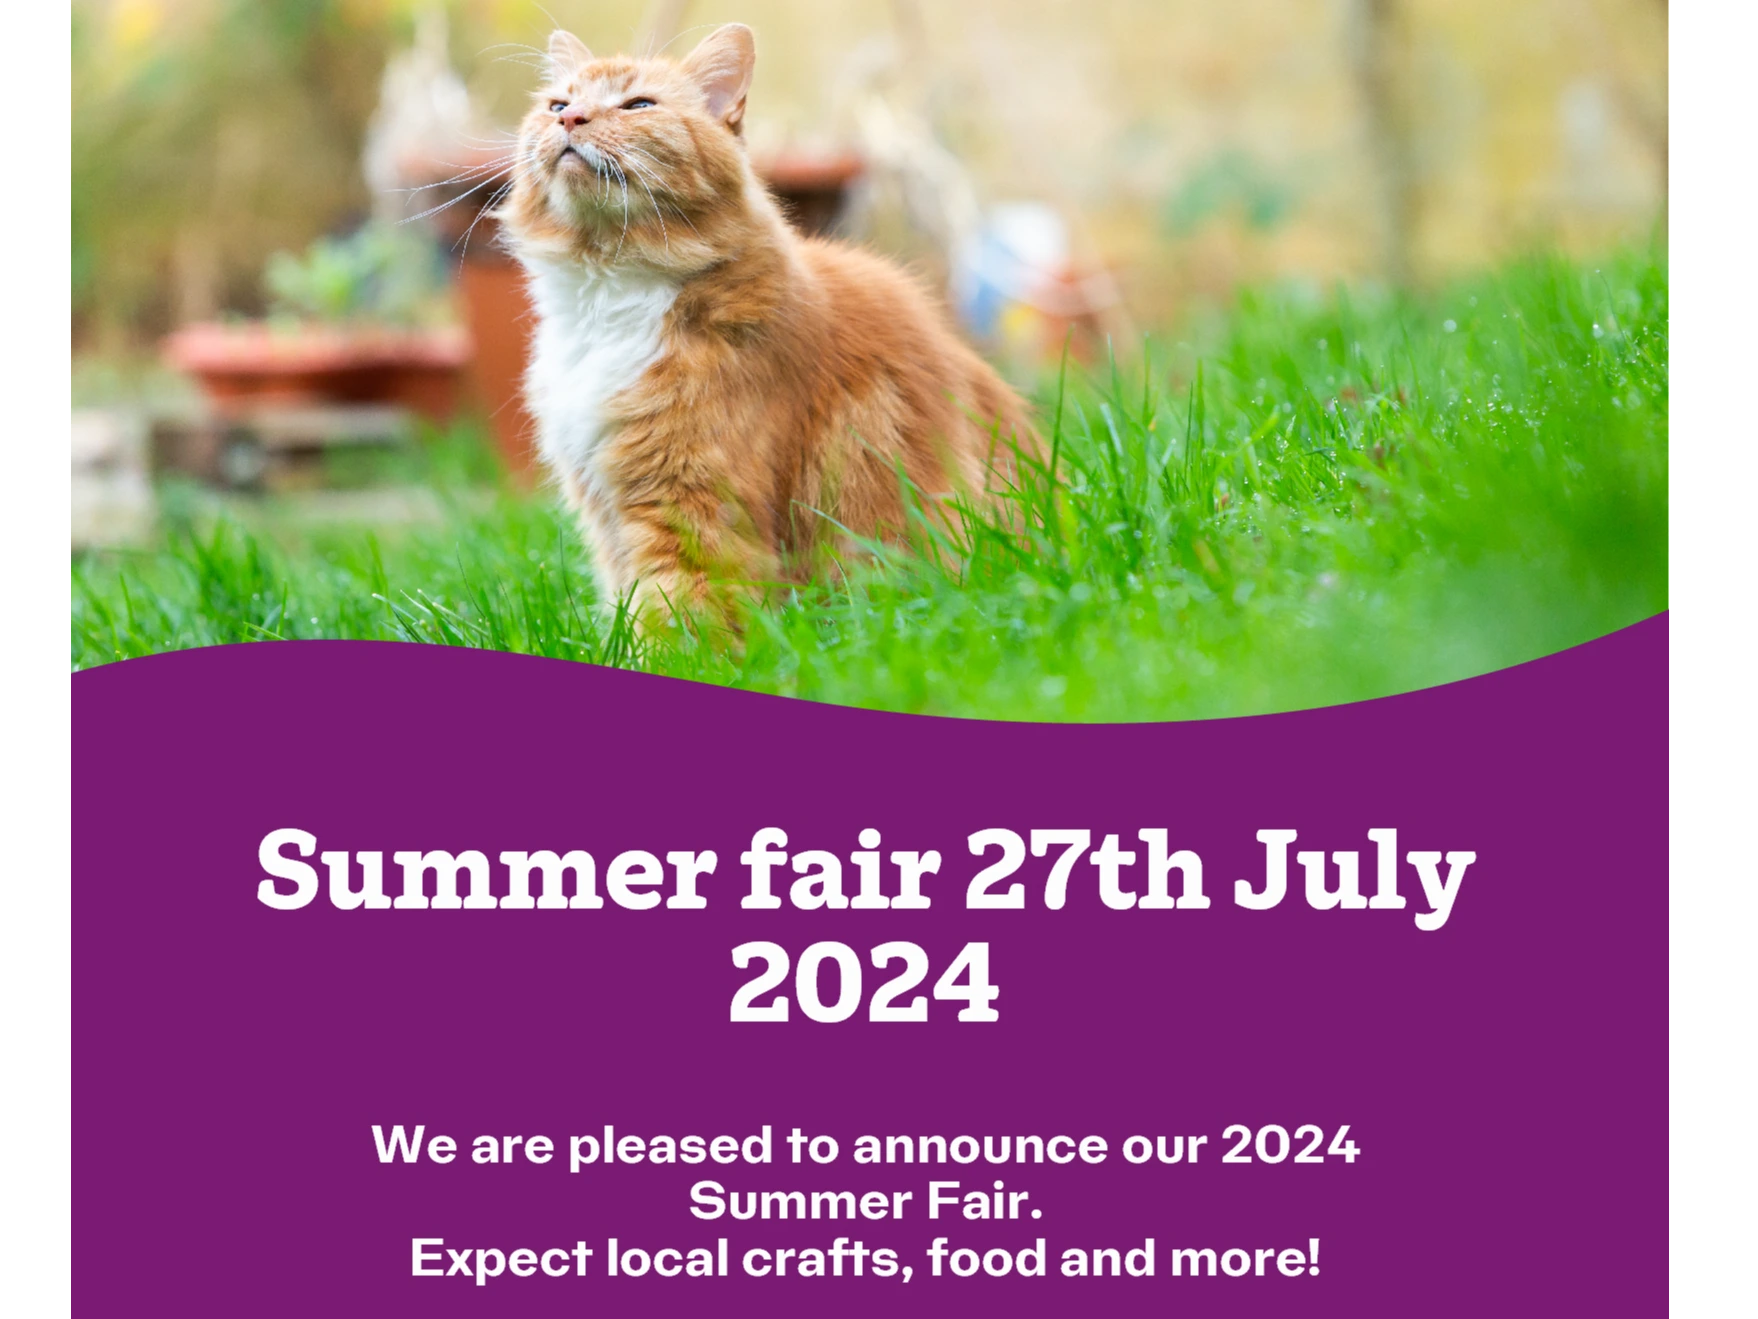 Summer fair event 2024